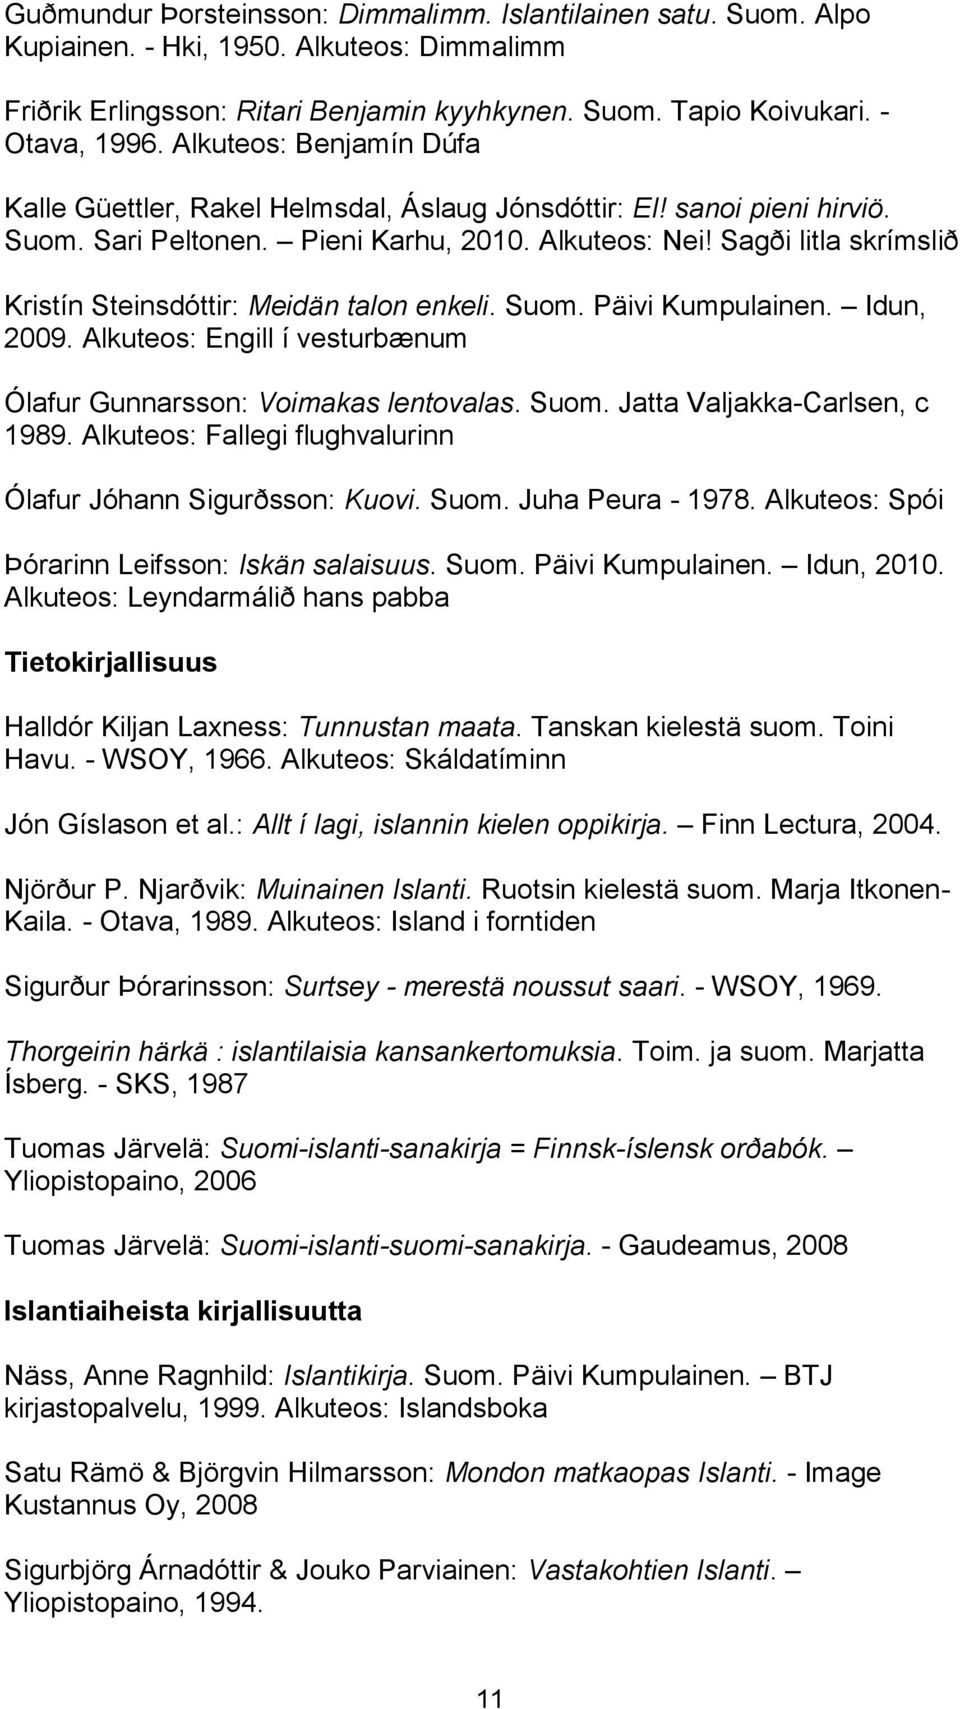 Sagði litla skrímslið Kristín Steinsdóttir: Meidän talon enkeli. Suom. Päivi Kumpulainen. Idun, 2009. Alkuteos: Engill í vesturbænum Ólafur Gunnarsson: Voimakas lentovalas. Suom. Jatta Valjakka-Carlsen, c 1989.